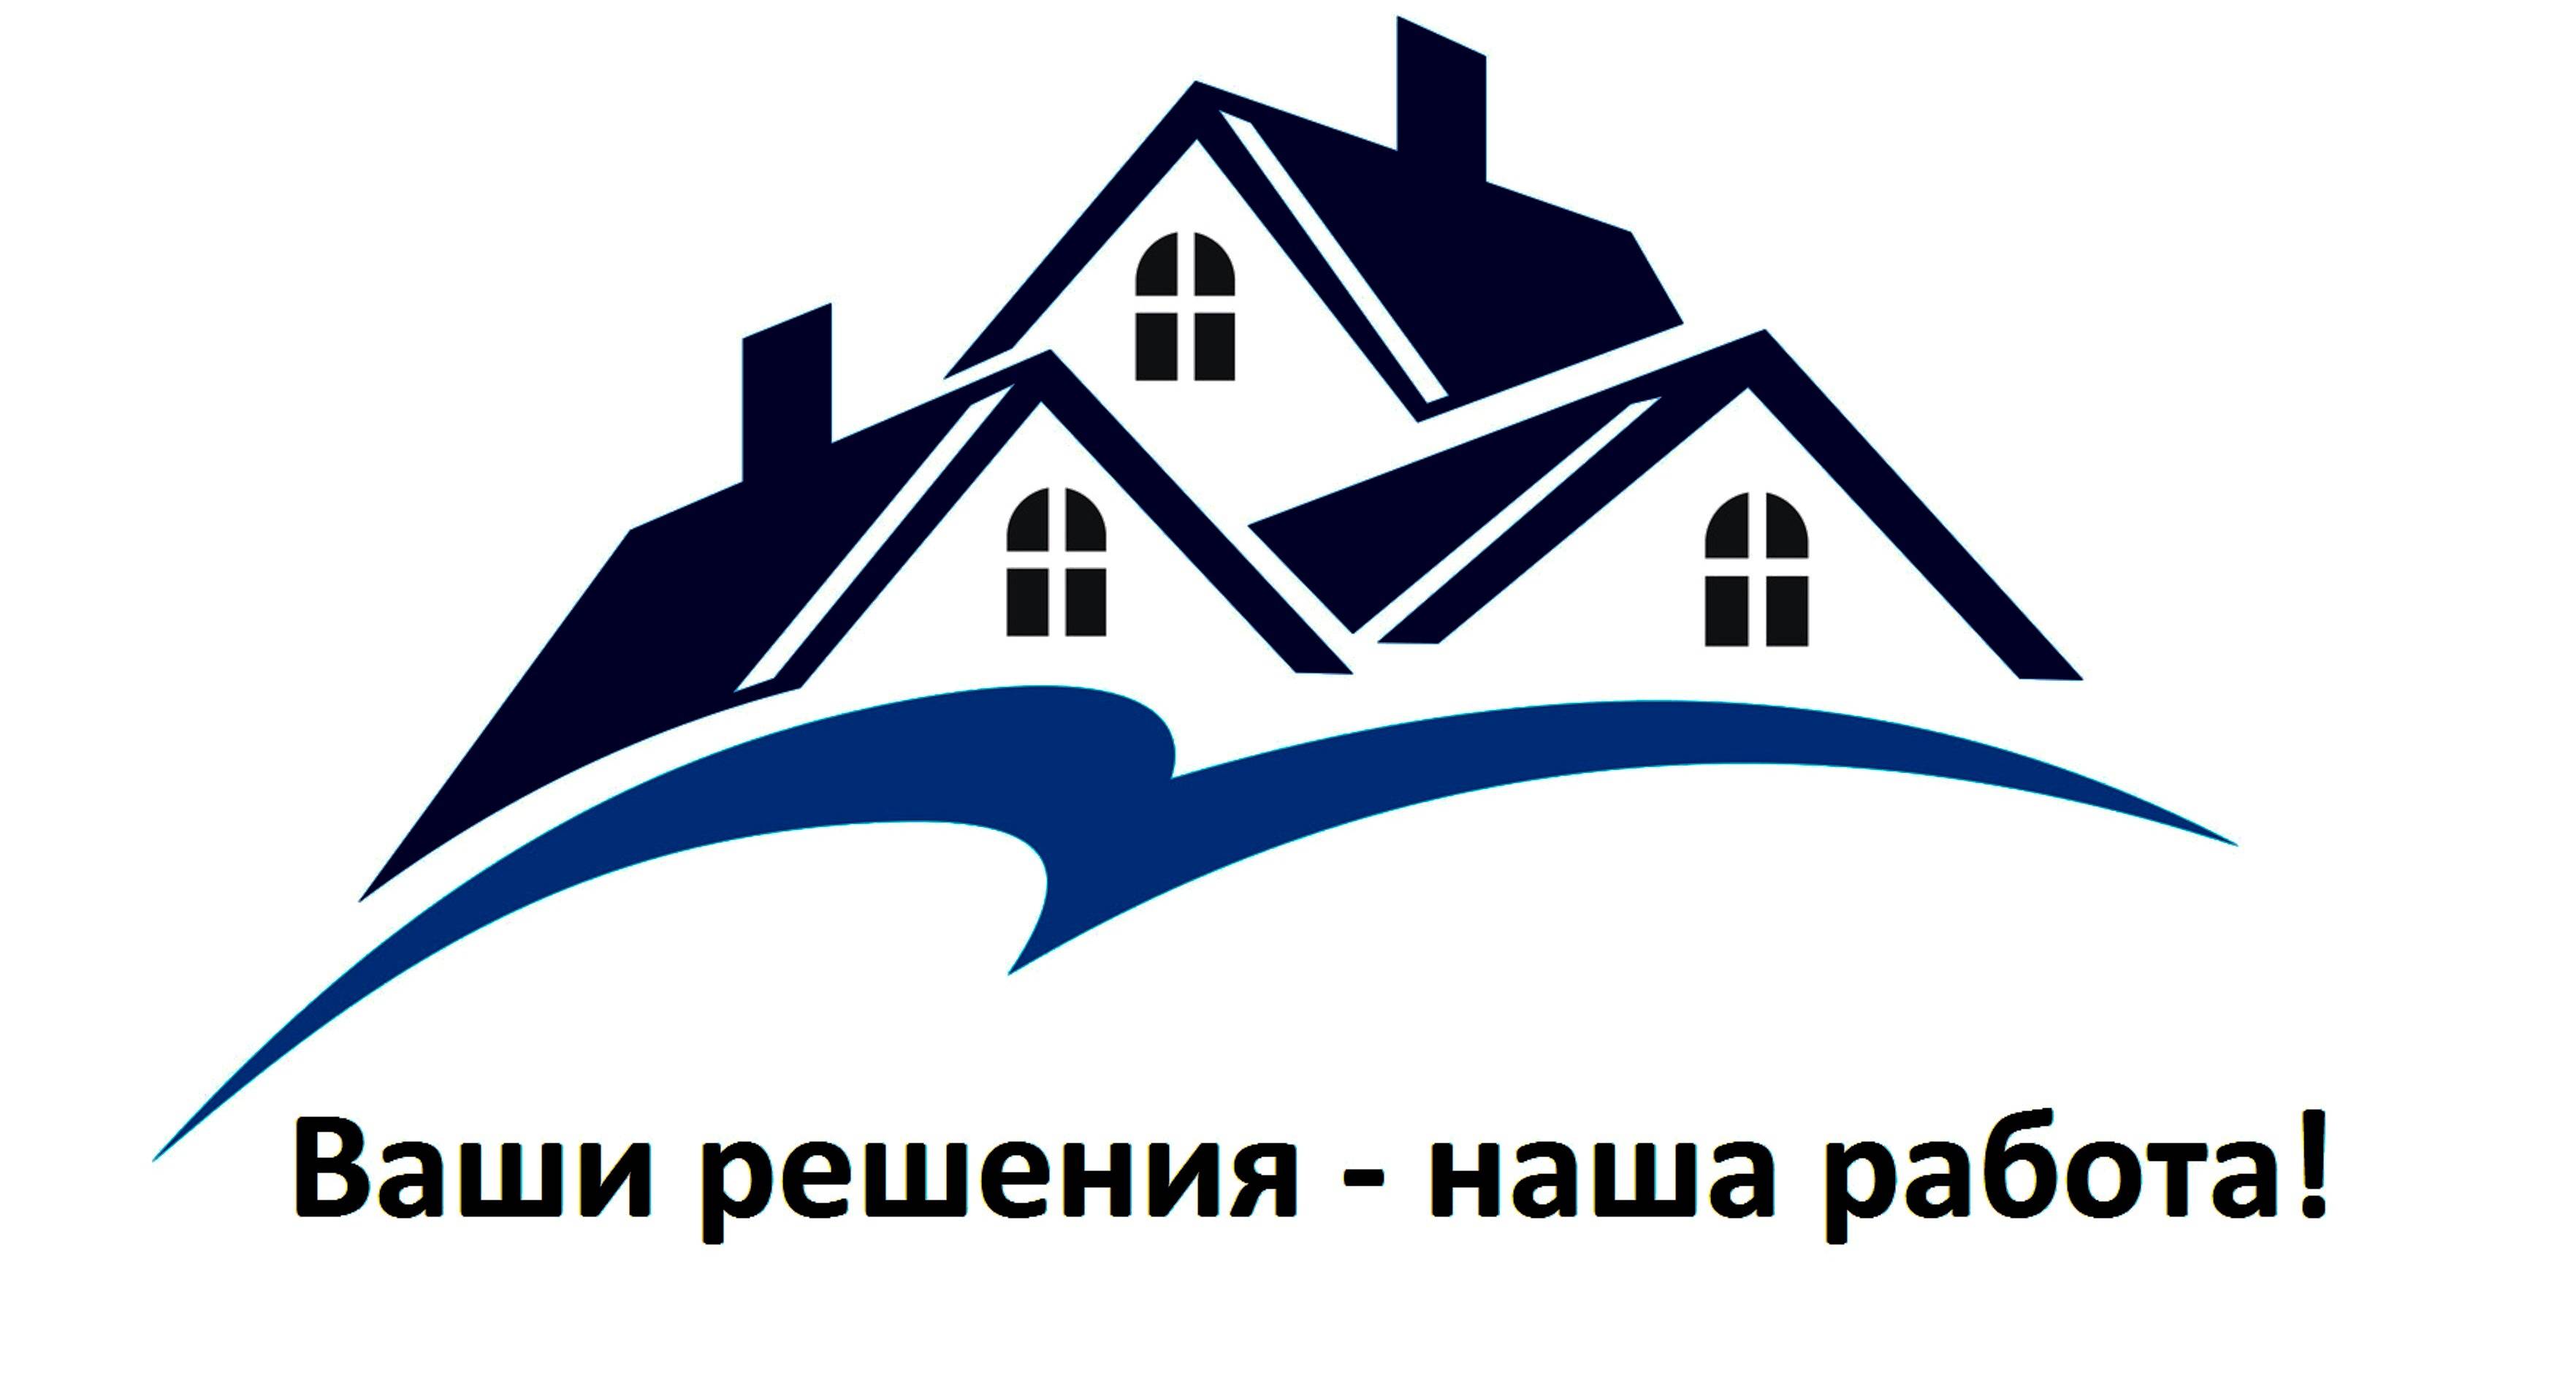 Одесская строительная компания с положительной репутацией - строй хаус